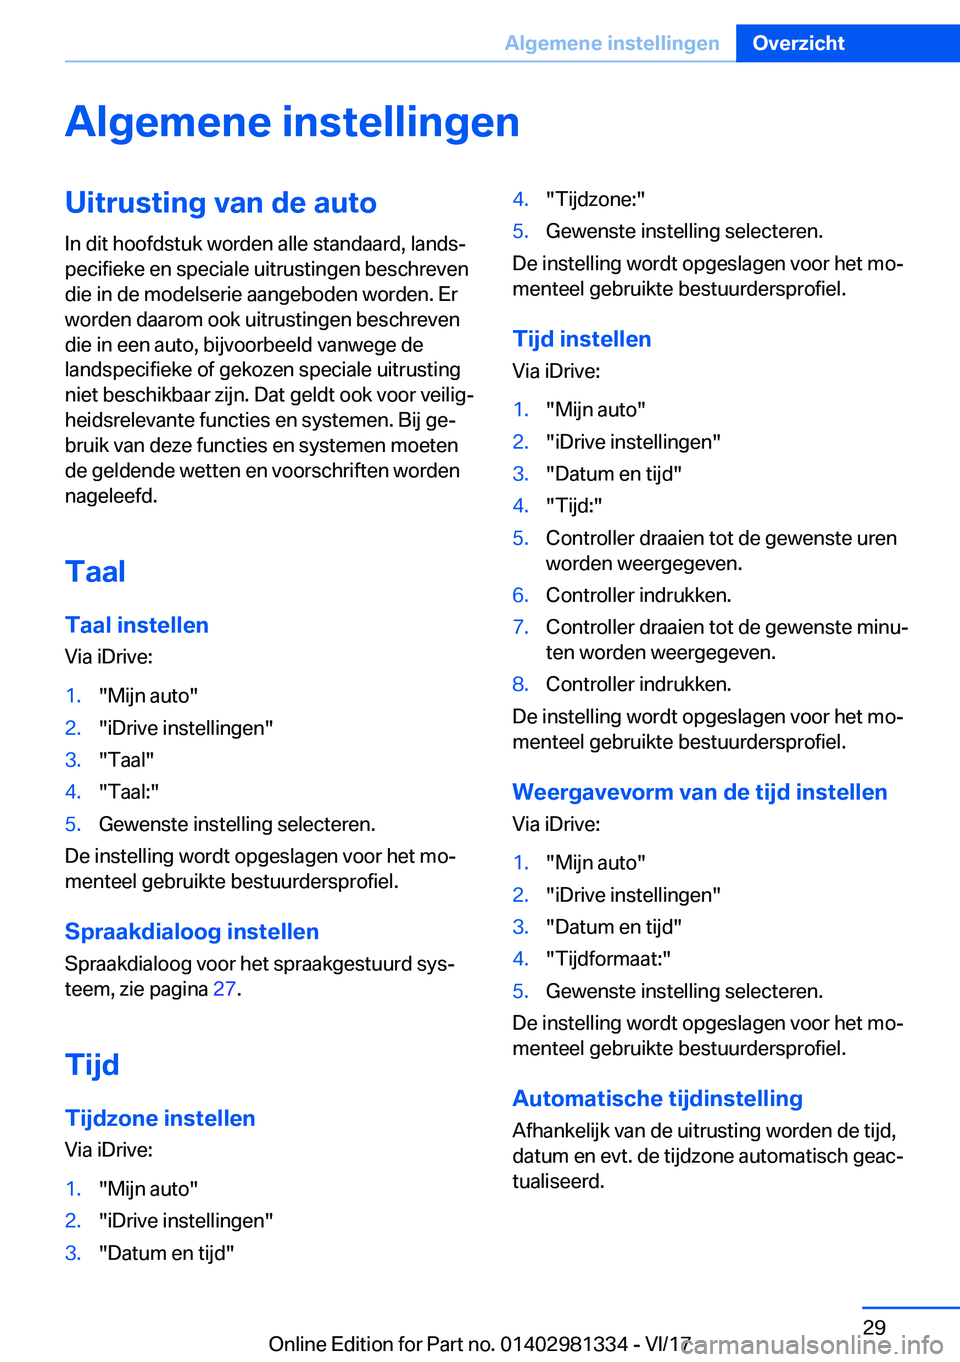 BMW X4 2018  Instructieboekjes (in Dutch) �A�l�g�e�m�e�n�e��i�n�s�t�e�l�l�i�n�g�e�n�U�i�t�r�u�s�t�i�n�g��v�a�n��d�e��a�u�t�o
�I�n� �d�i�t� �h�o�o�f�d�s�t�u�k� �w�o�r�d�e�n� �a�l�l�e� �s�t�a�n�d�a�a�r�d�,� �l�a�n�d�sj
�p�e�c�i�f�i�e�k�e� 